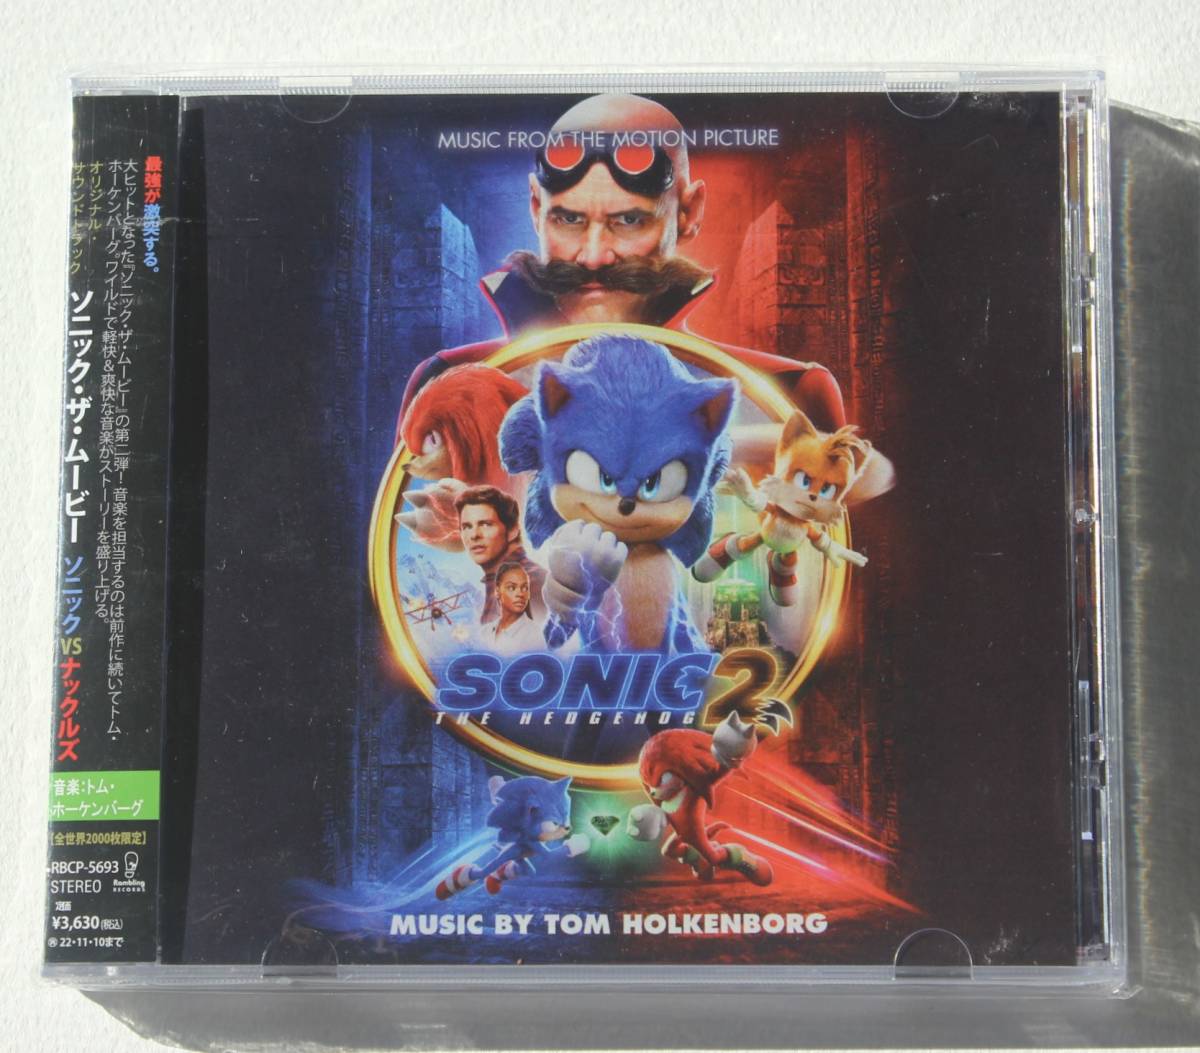 『ソニック・ザ・ムービー/ソニックVSナックルズ』 Tom Holkenborg (Junkie XL)【La-La Land Records】Sonic the Hedgehog 2《限定》_画像1